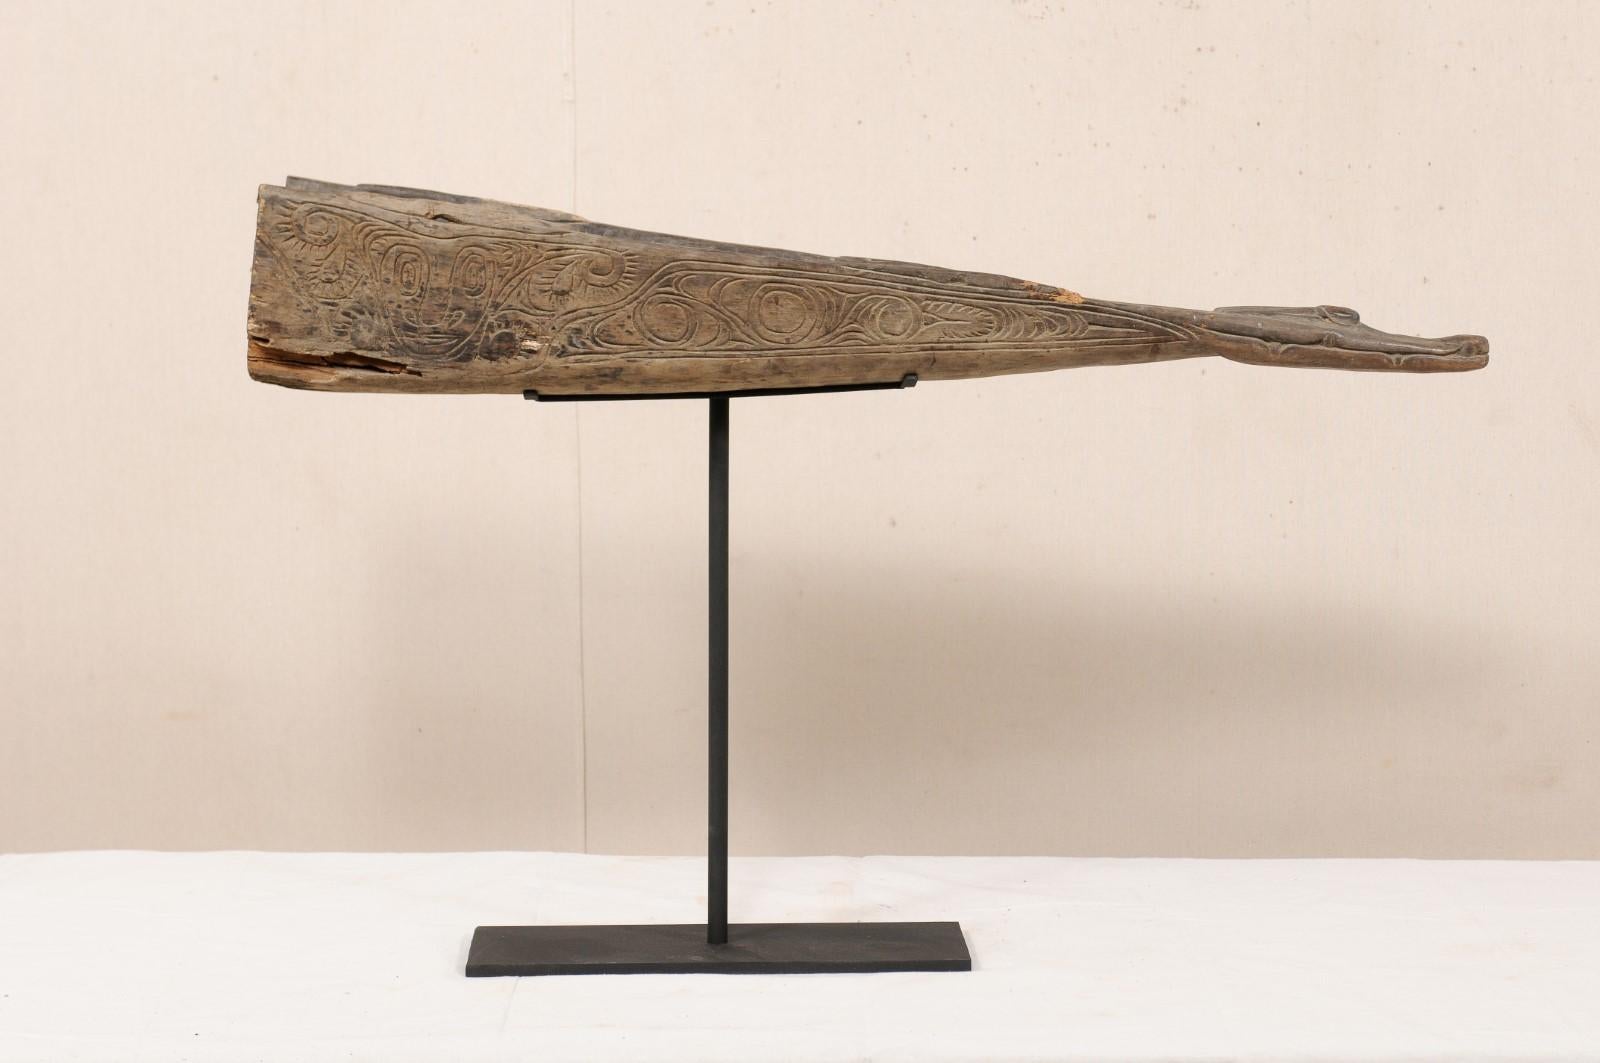 Une proue de bateau vintage en bois sculpté à tête de crocodile de Papouasie-Nouvelle-Guinée. Cette proue de bateau de Papouasie-Nouvelle-Guinée du milieu du XXe siècle a été sculptée dans du bois et présente la tête d'un crocodile. Cette proue de